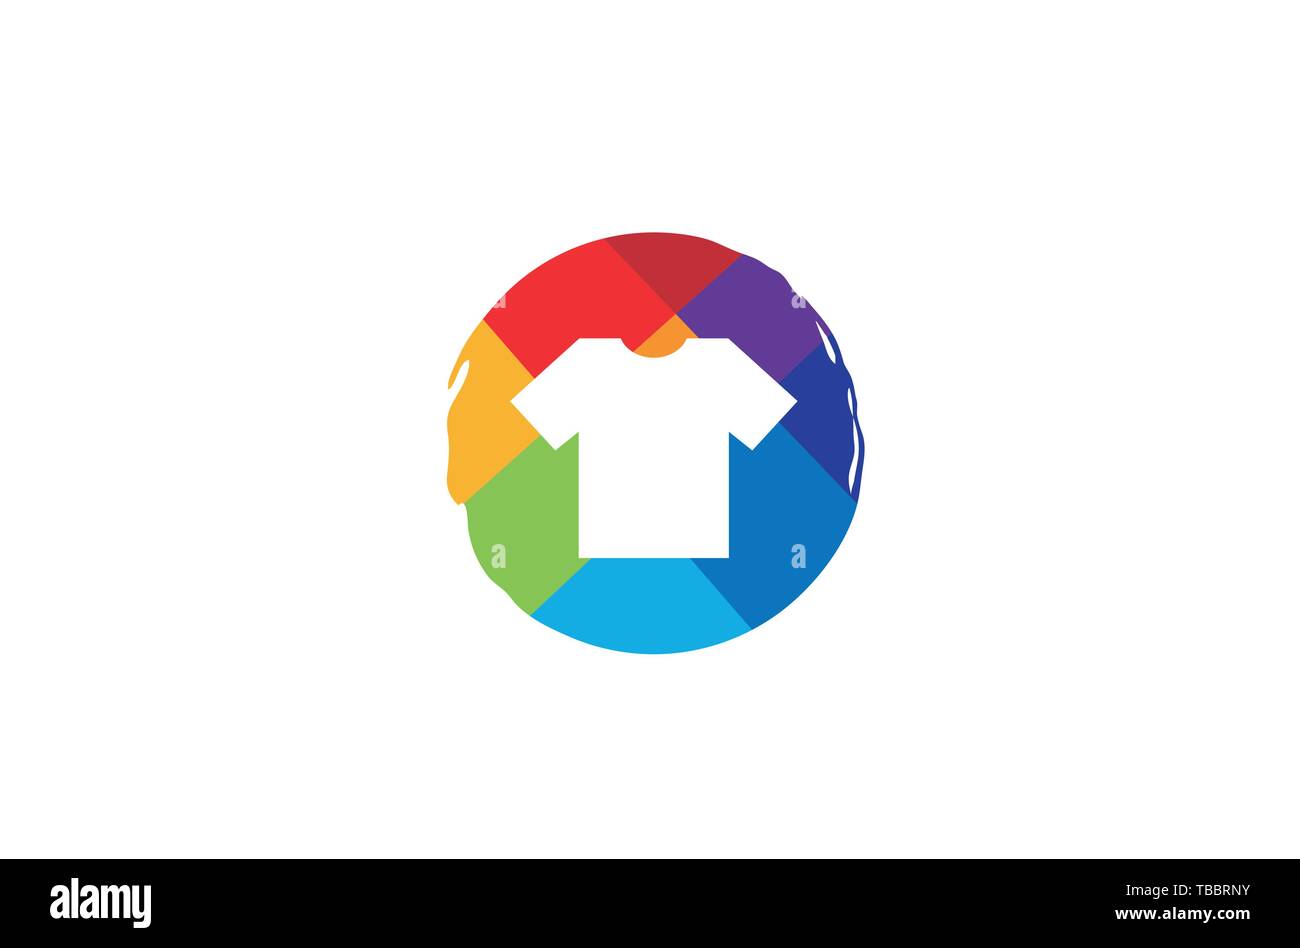 Creative circolare colorata colorata tshirt Logo Design simbolo illustrazione vettoriale Illustrazione Vettoriale